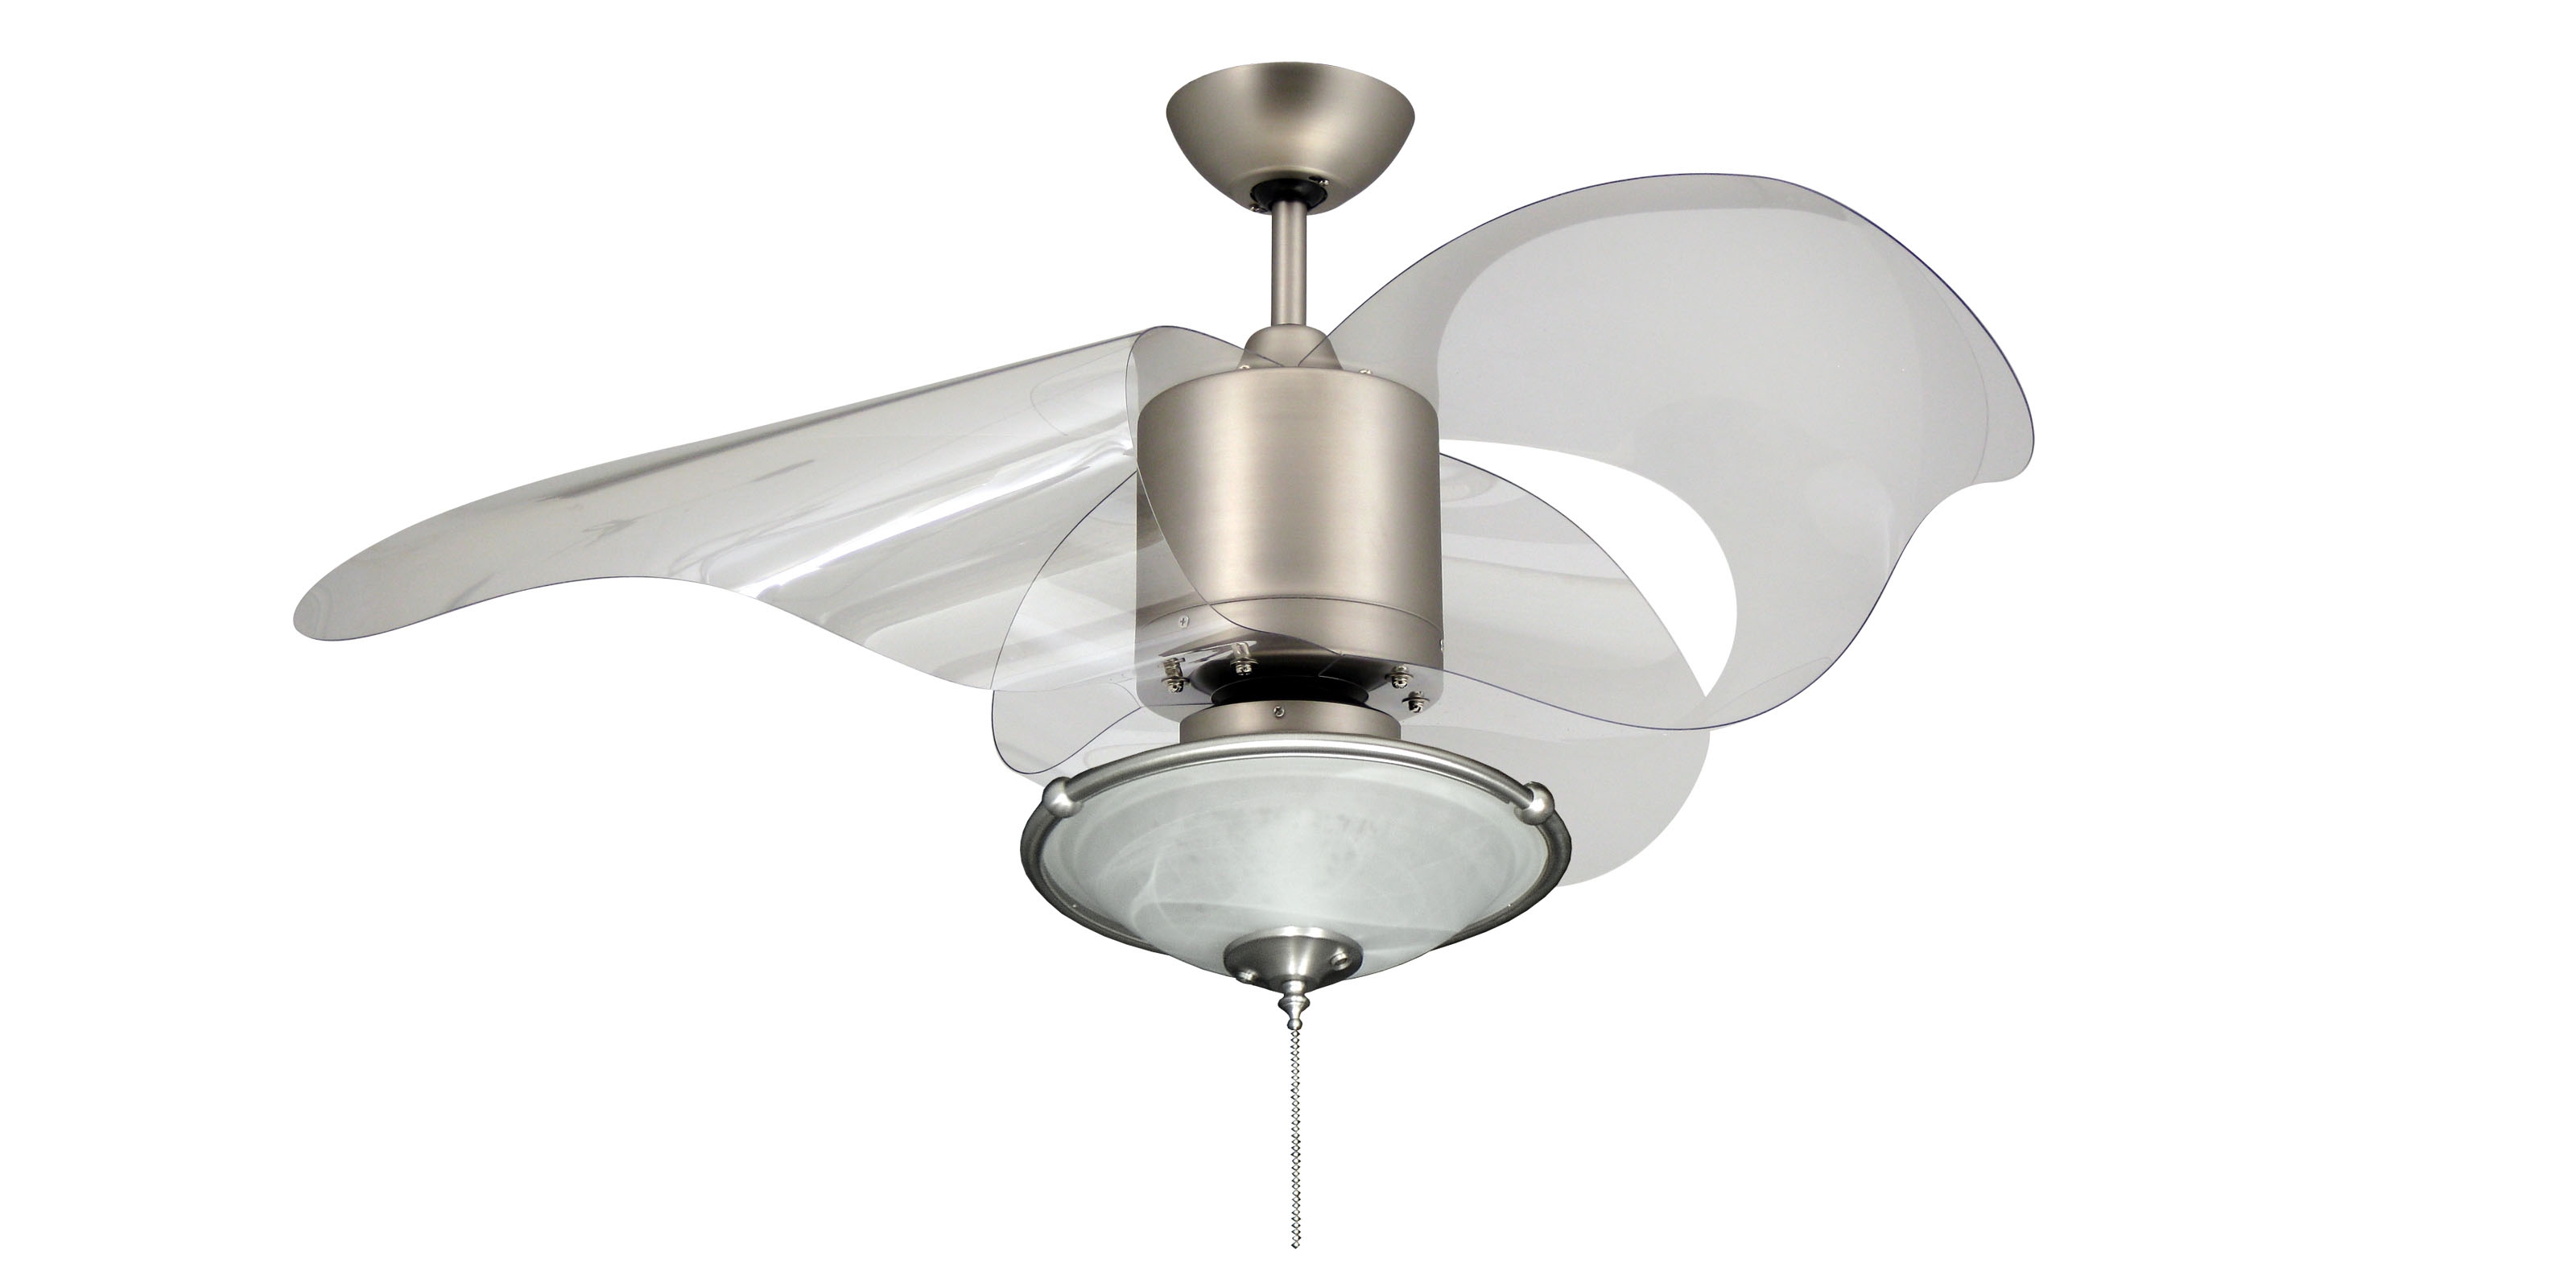 Unique Ceiling Fan Light Fixtures